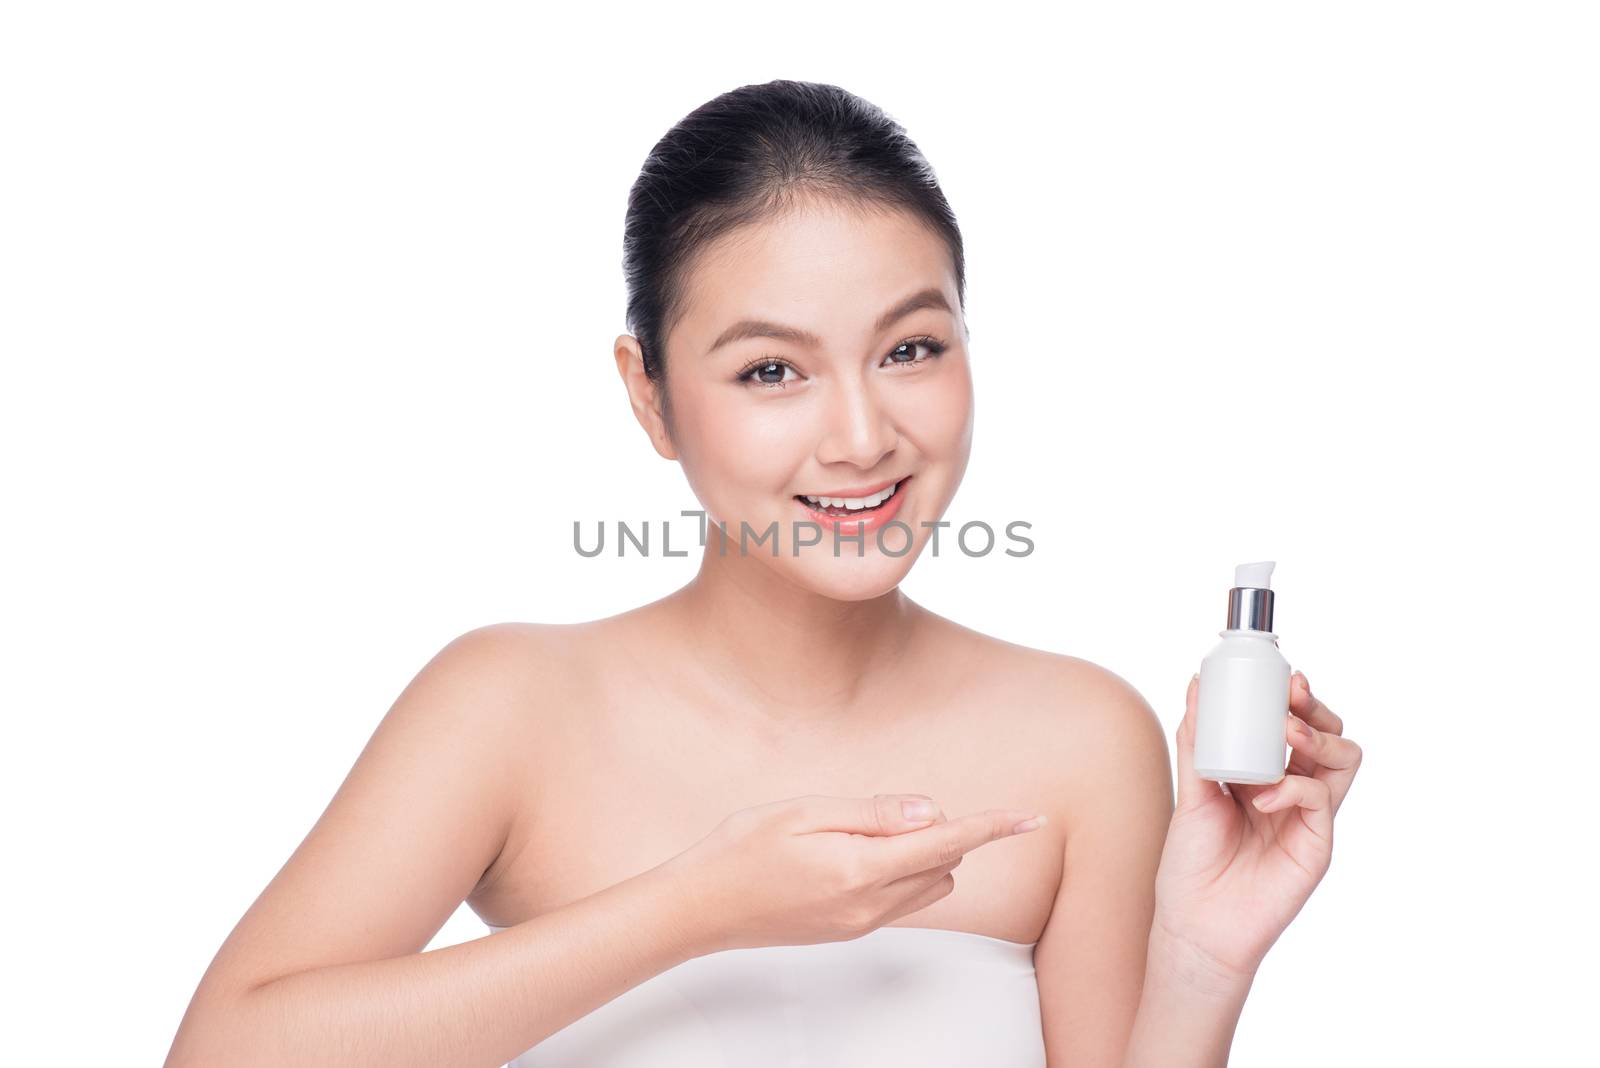 Beauty treatment. Asian woman holding serum moisturizing serum bottle